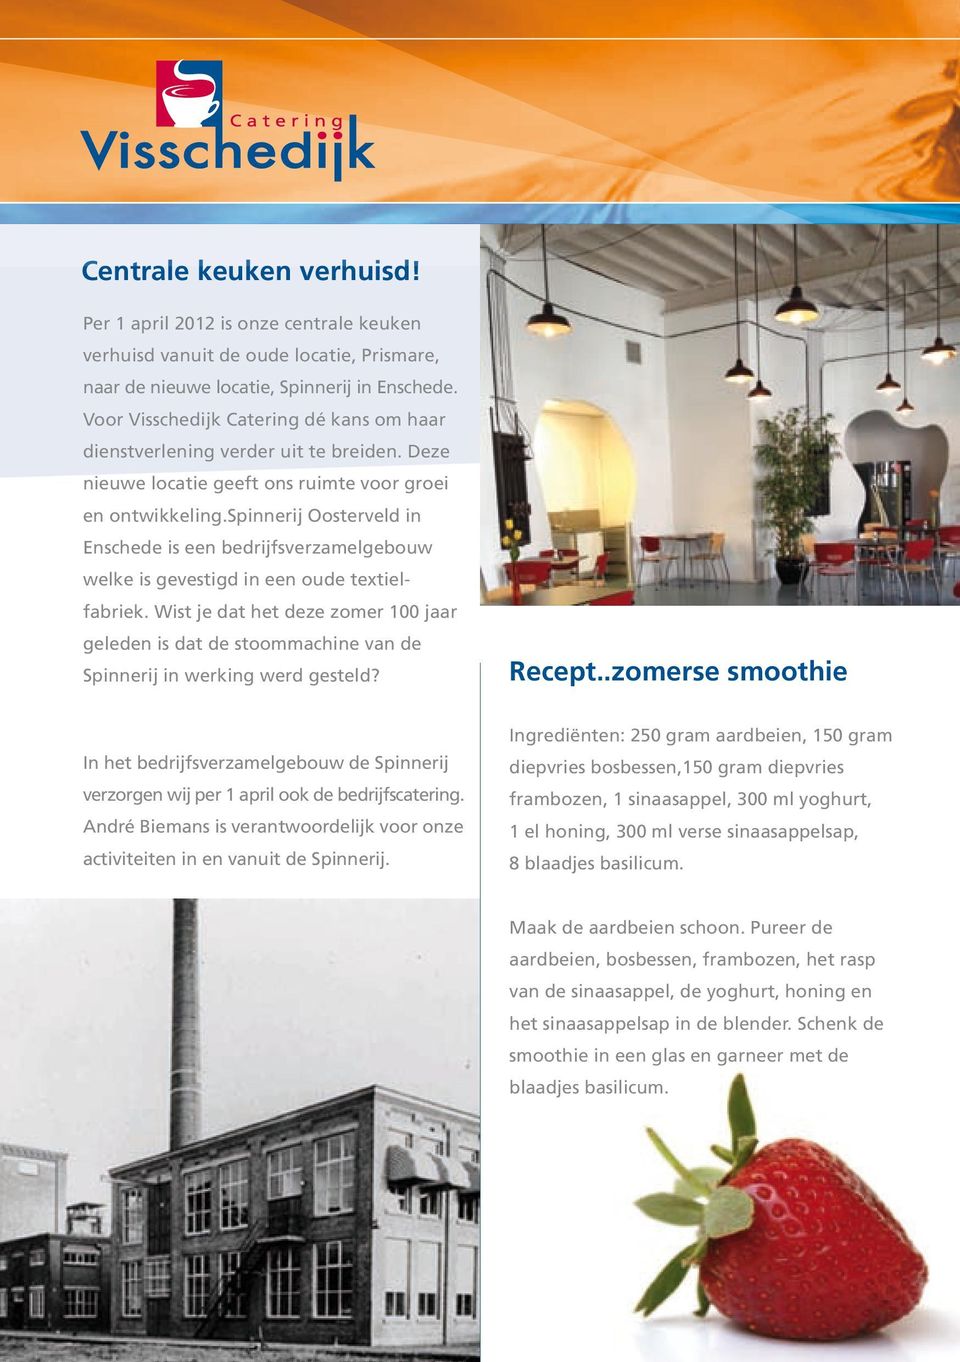 spinnerij Oosterveld in Enschede is een bedrijfsverzamelgebouw welke is gevestigd in een oude textielfabriek.